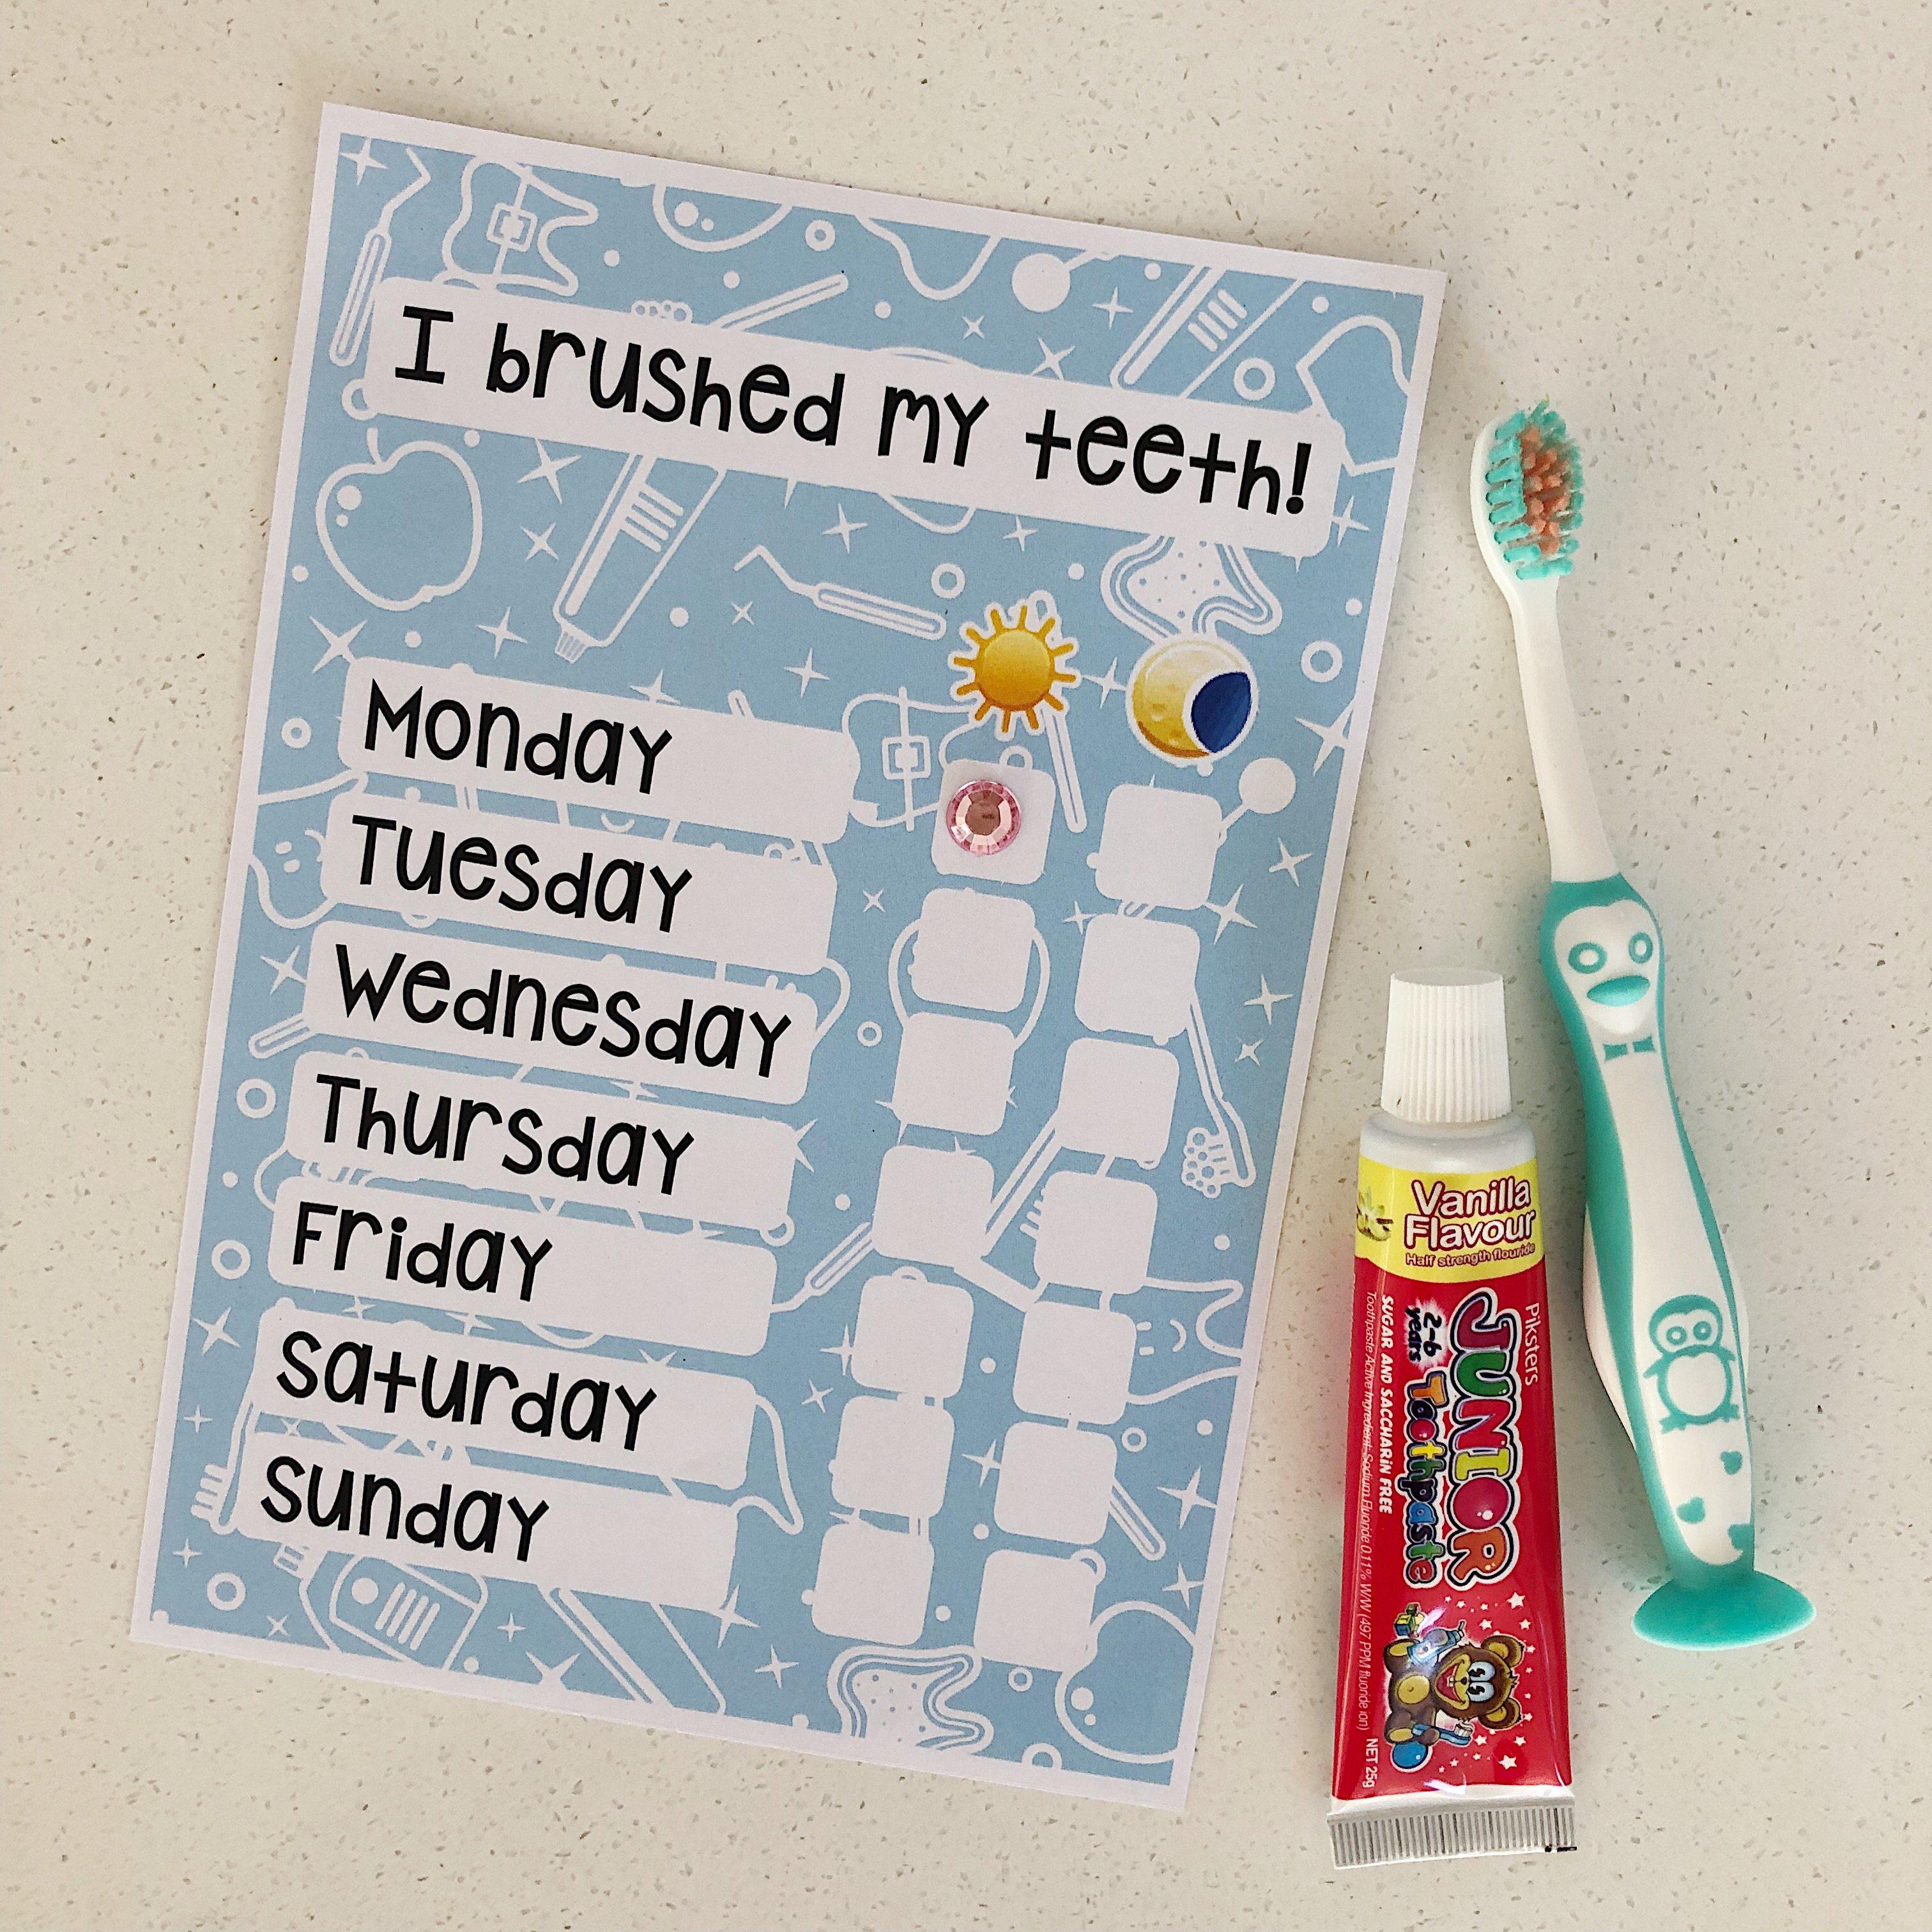 Toothbrushing Reward Chart